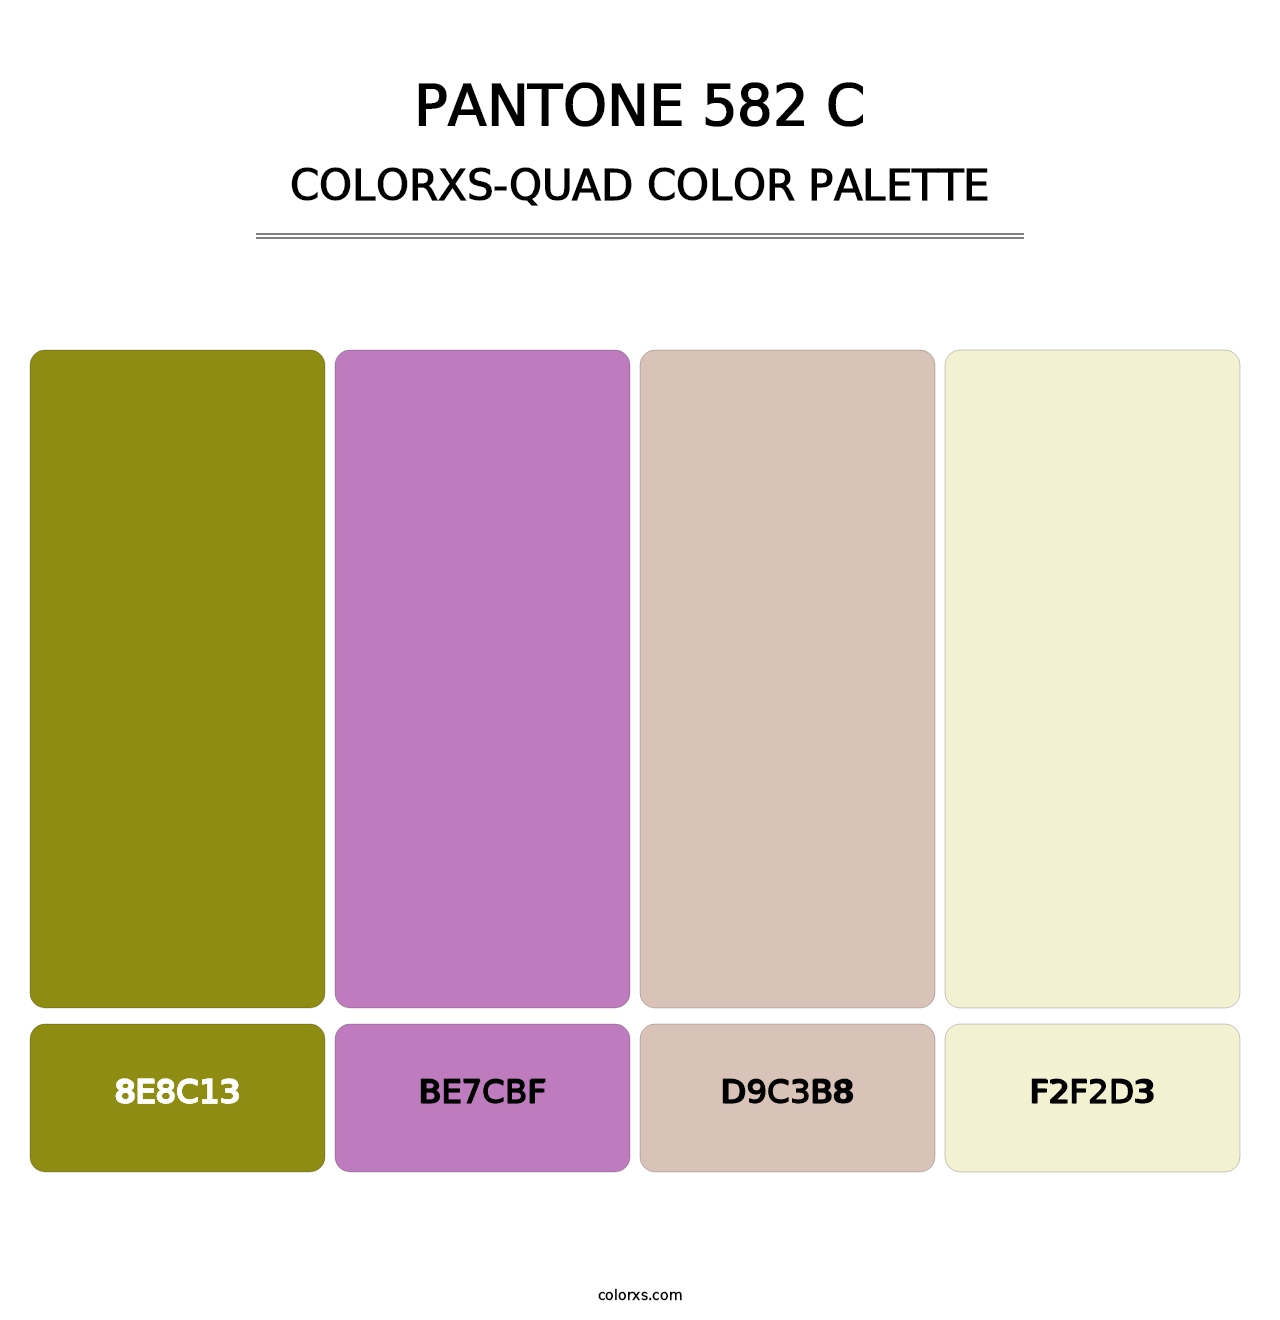 PANTONE 582 C - Colorxs Quad Palette